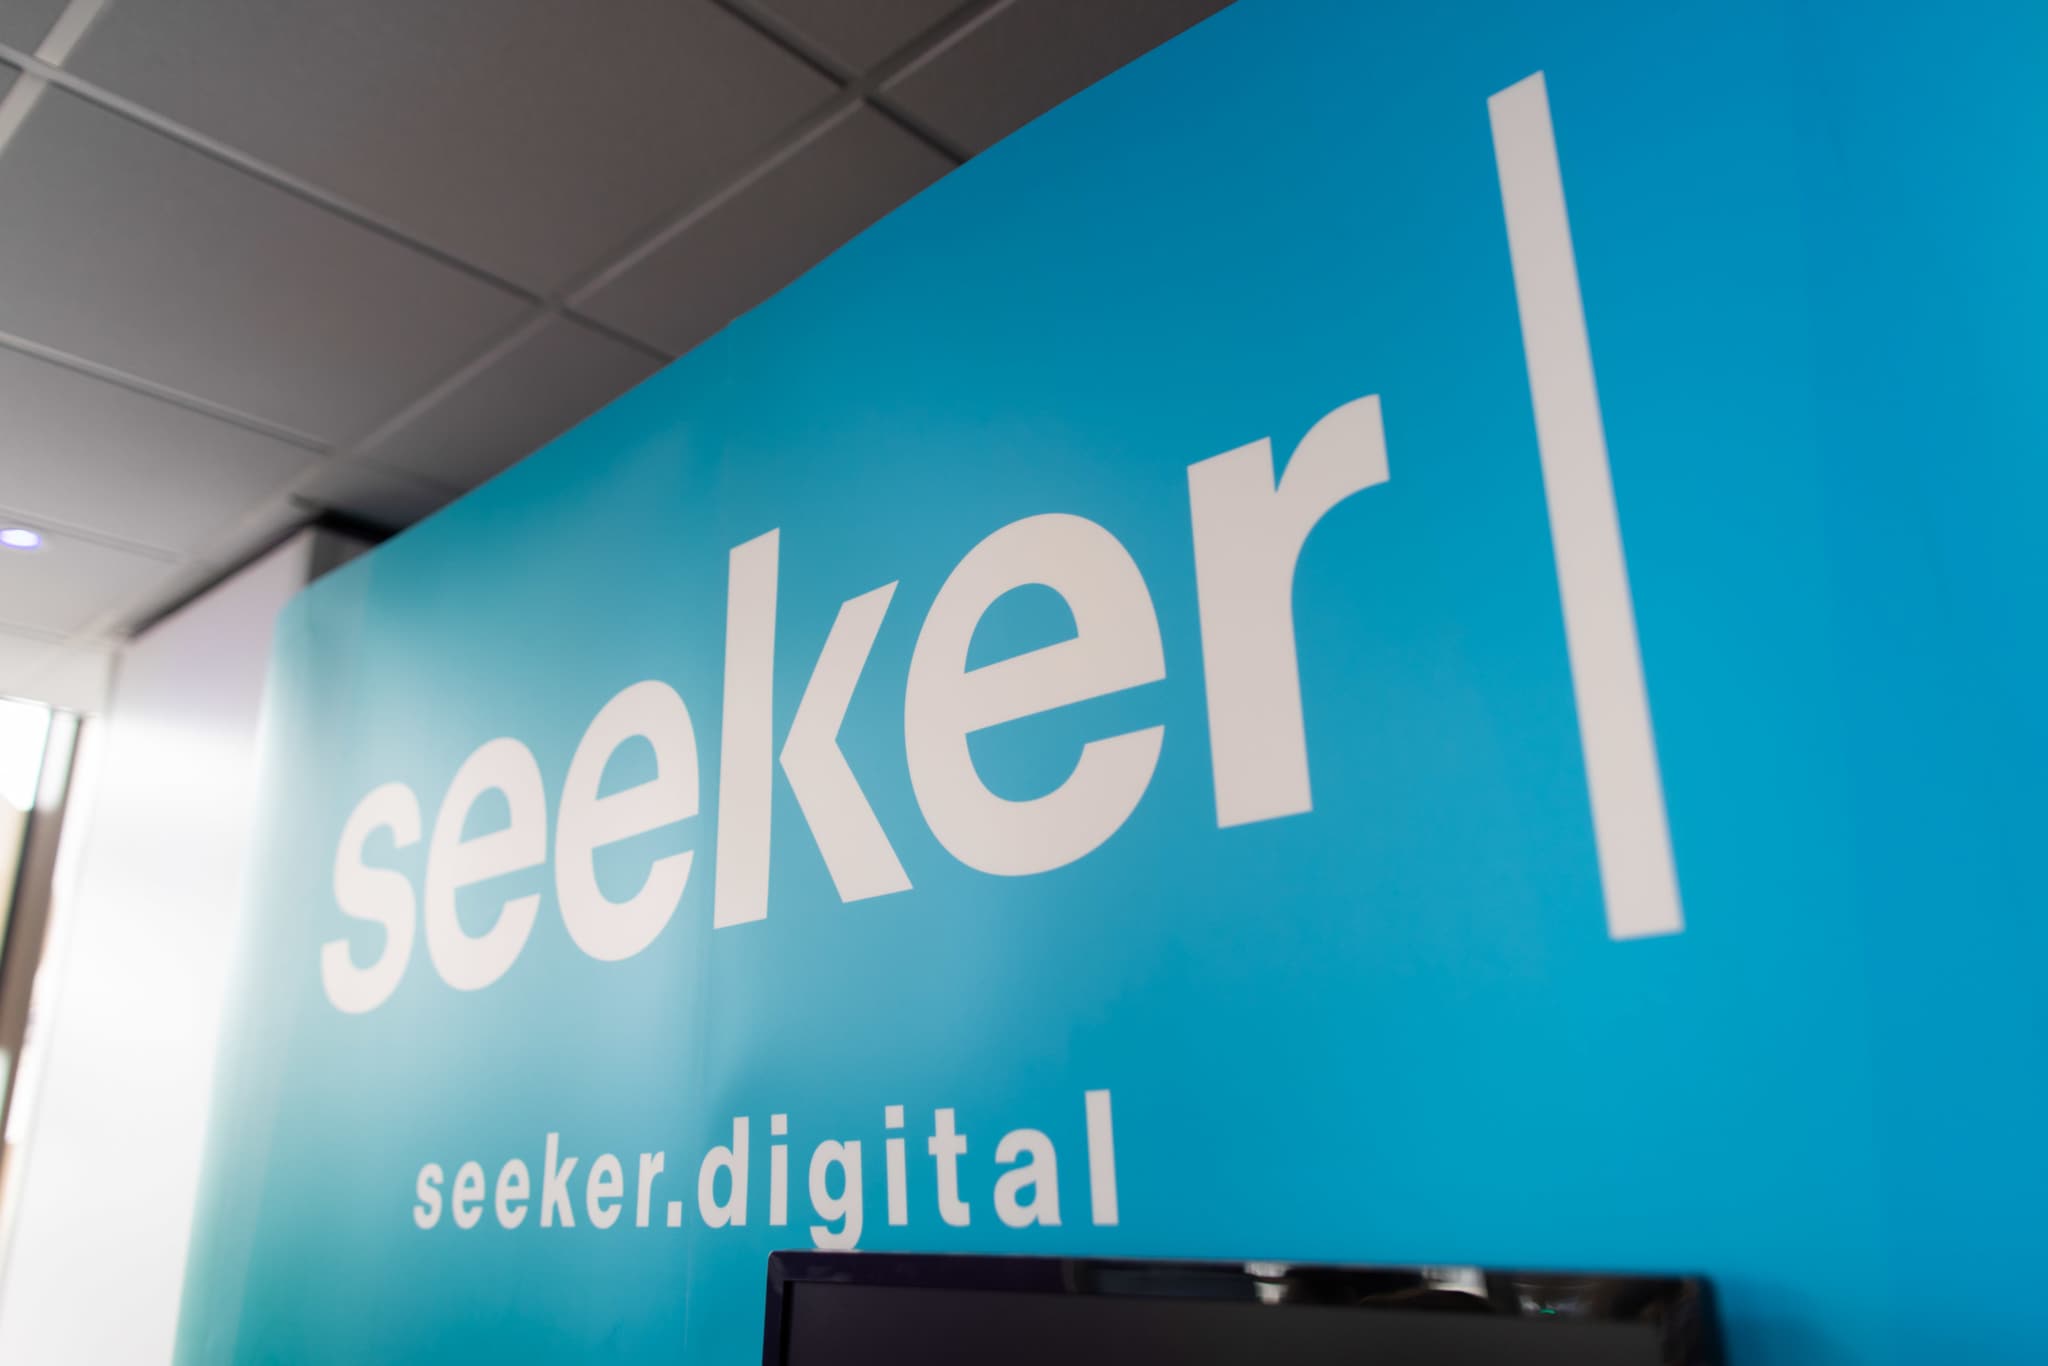 The Seeker Digital wall logo in blue